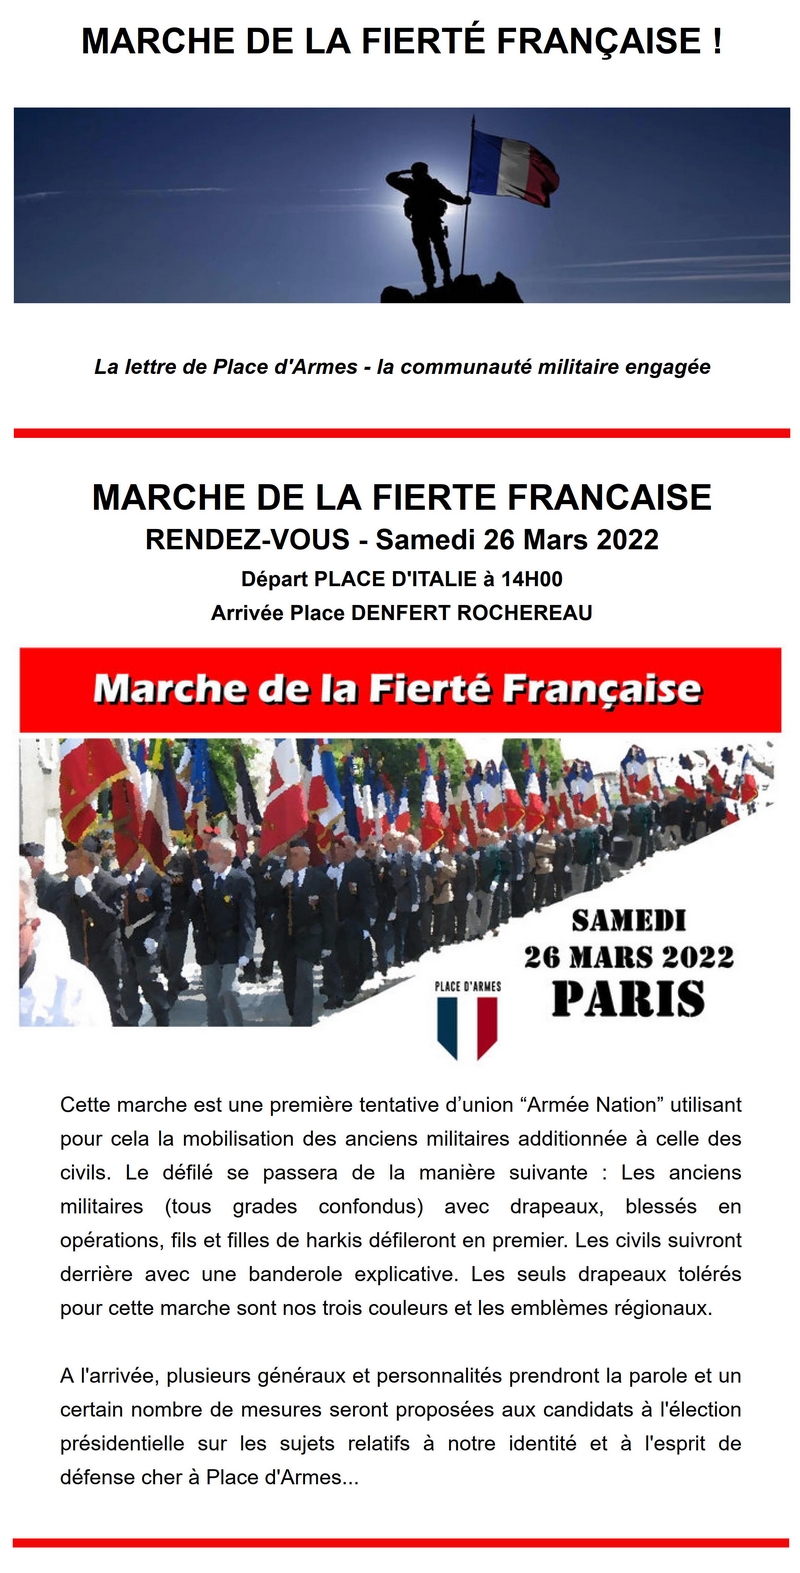 Marche Fierté française - Paris 26 mars 2022